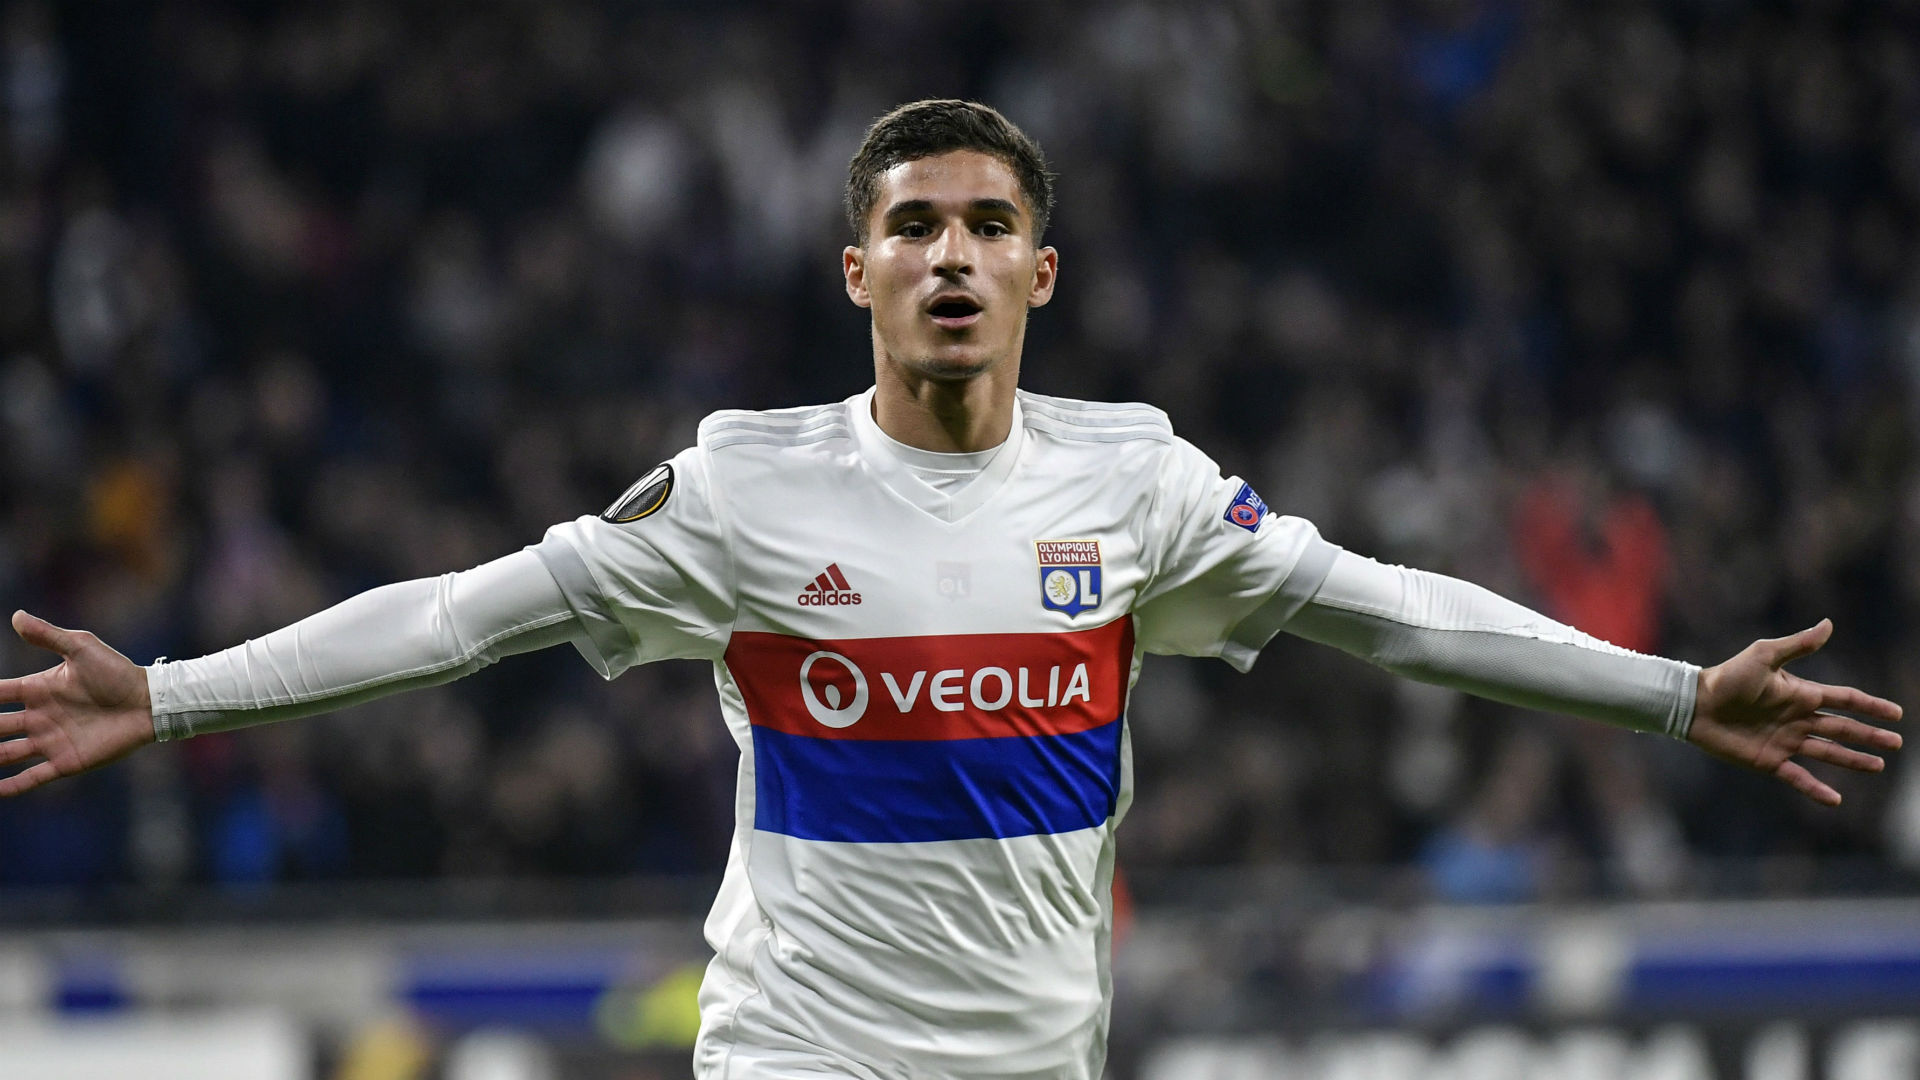 Ligue 1 news: Alexandre Lacazette and Nabil Fekir provide the inspiration for latest Lyon academy star Houssem Aouar | Goal.com